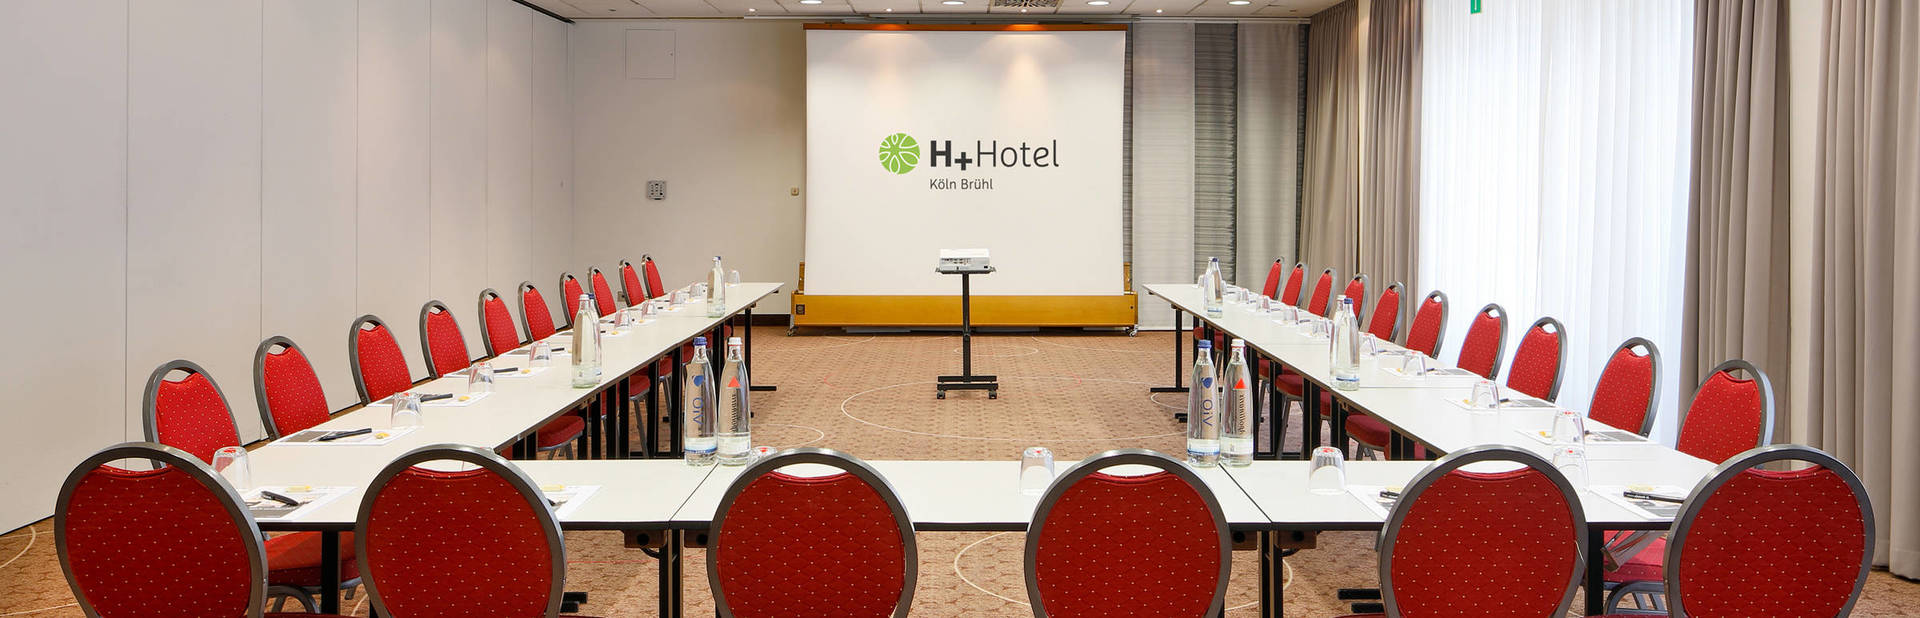 Professionelle Tagungen durchführen mit dem H+ Hotel Köln Brühl - Offizielle Webseite